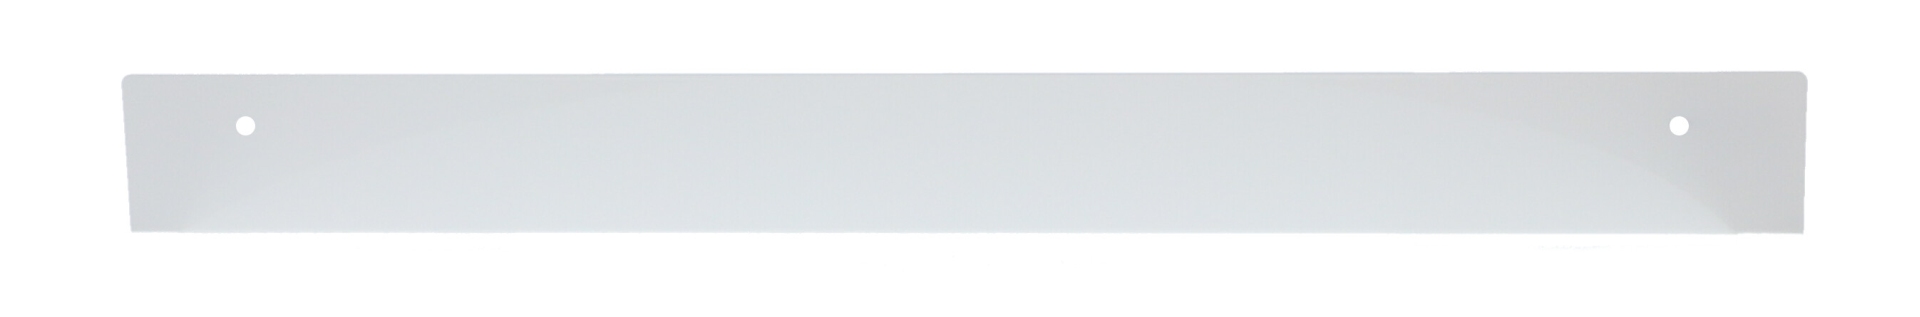 Das Wandregal Jill wurde aus Metall gefertigt und hat einen weißen Farbton. Die Breite beträgt 80 cm. Das Design ist schlicht aber auch modern. Das Regal ist ein Produkt der Marke Jan Kurtz.